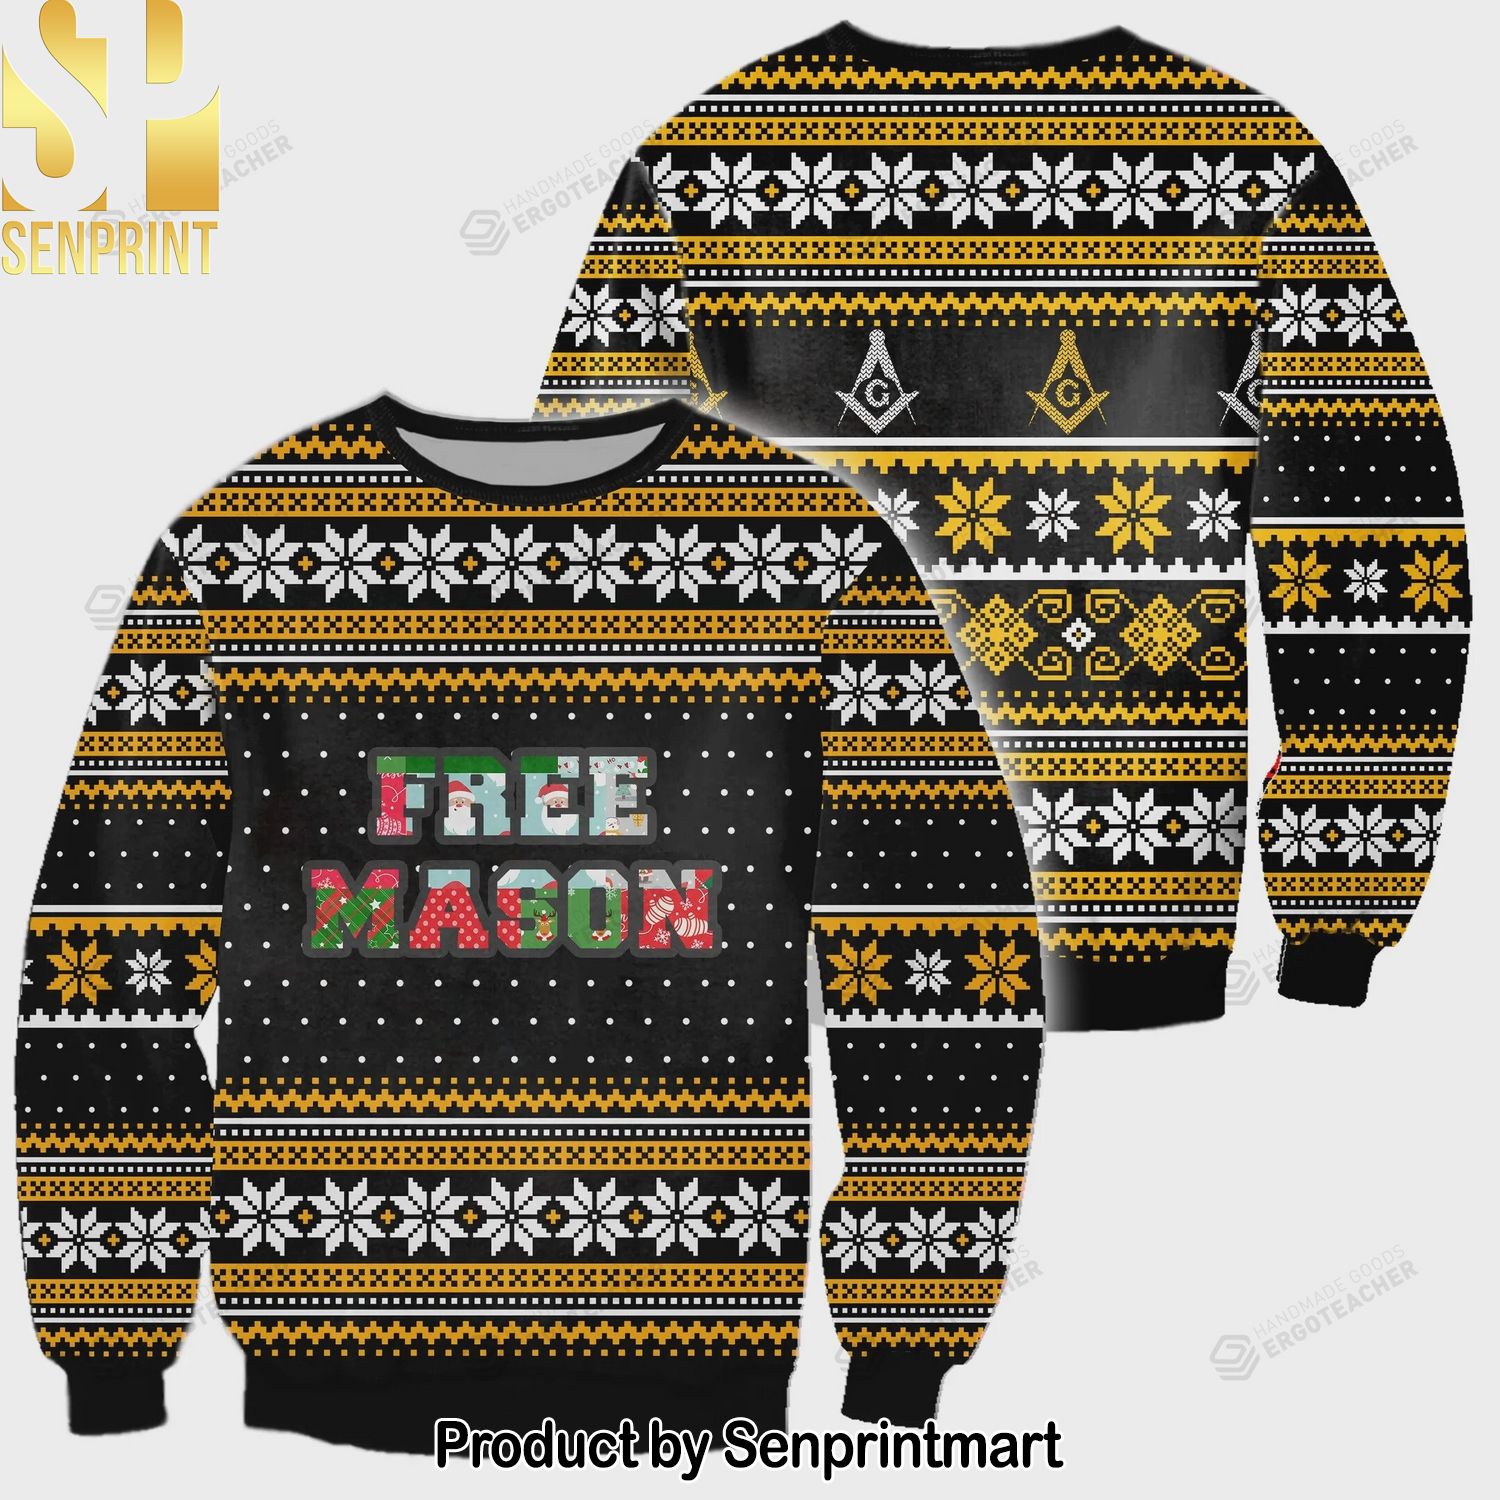 Freemason Christmas All Over For Christmas Gifts 3D Printed Ugly Christmas Sweater